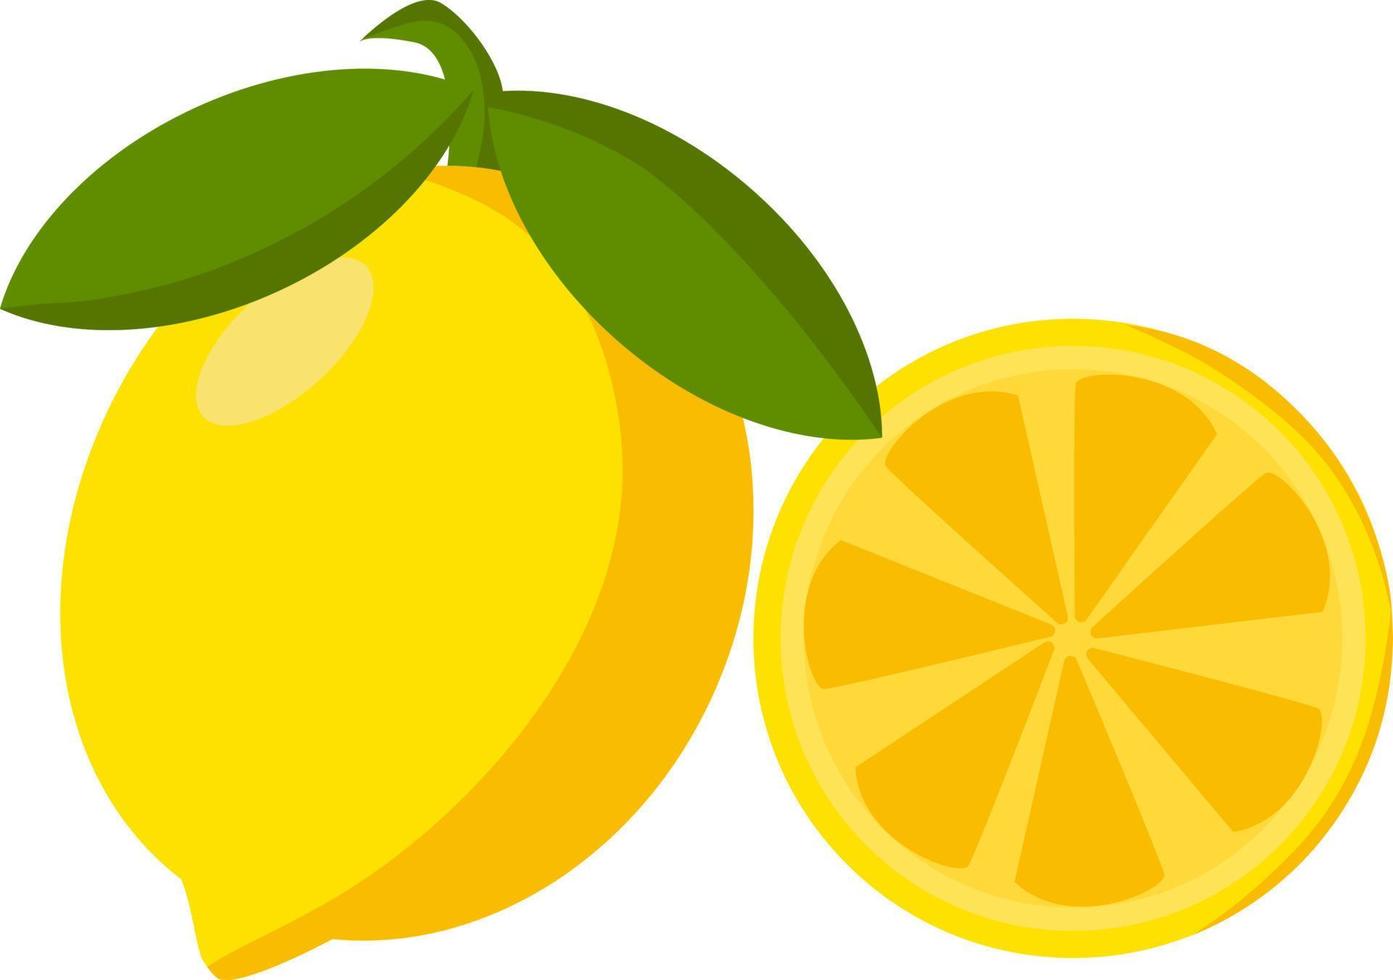 Lemons, illustration, vector on white background.